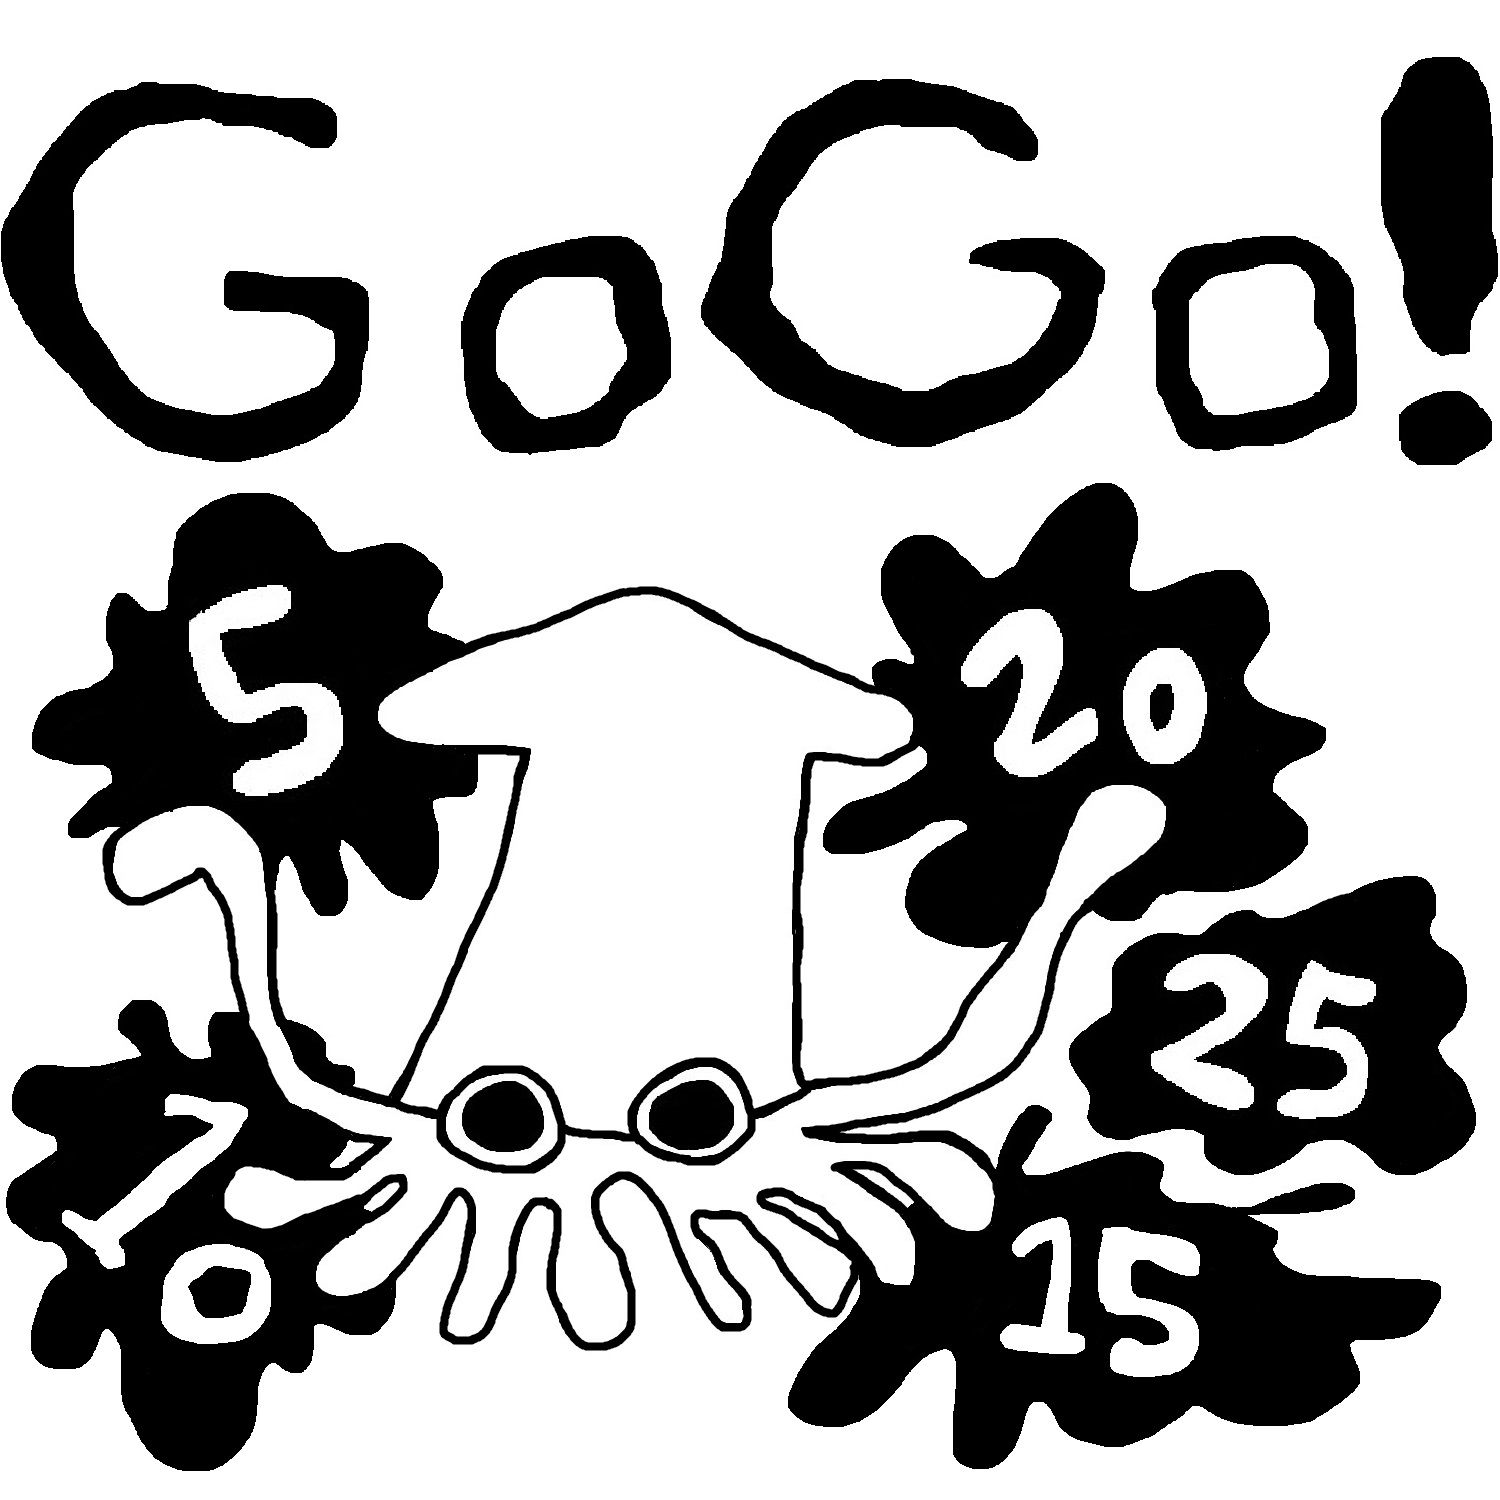 GoGoGotobi Auto Trading